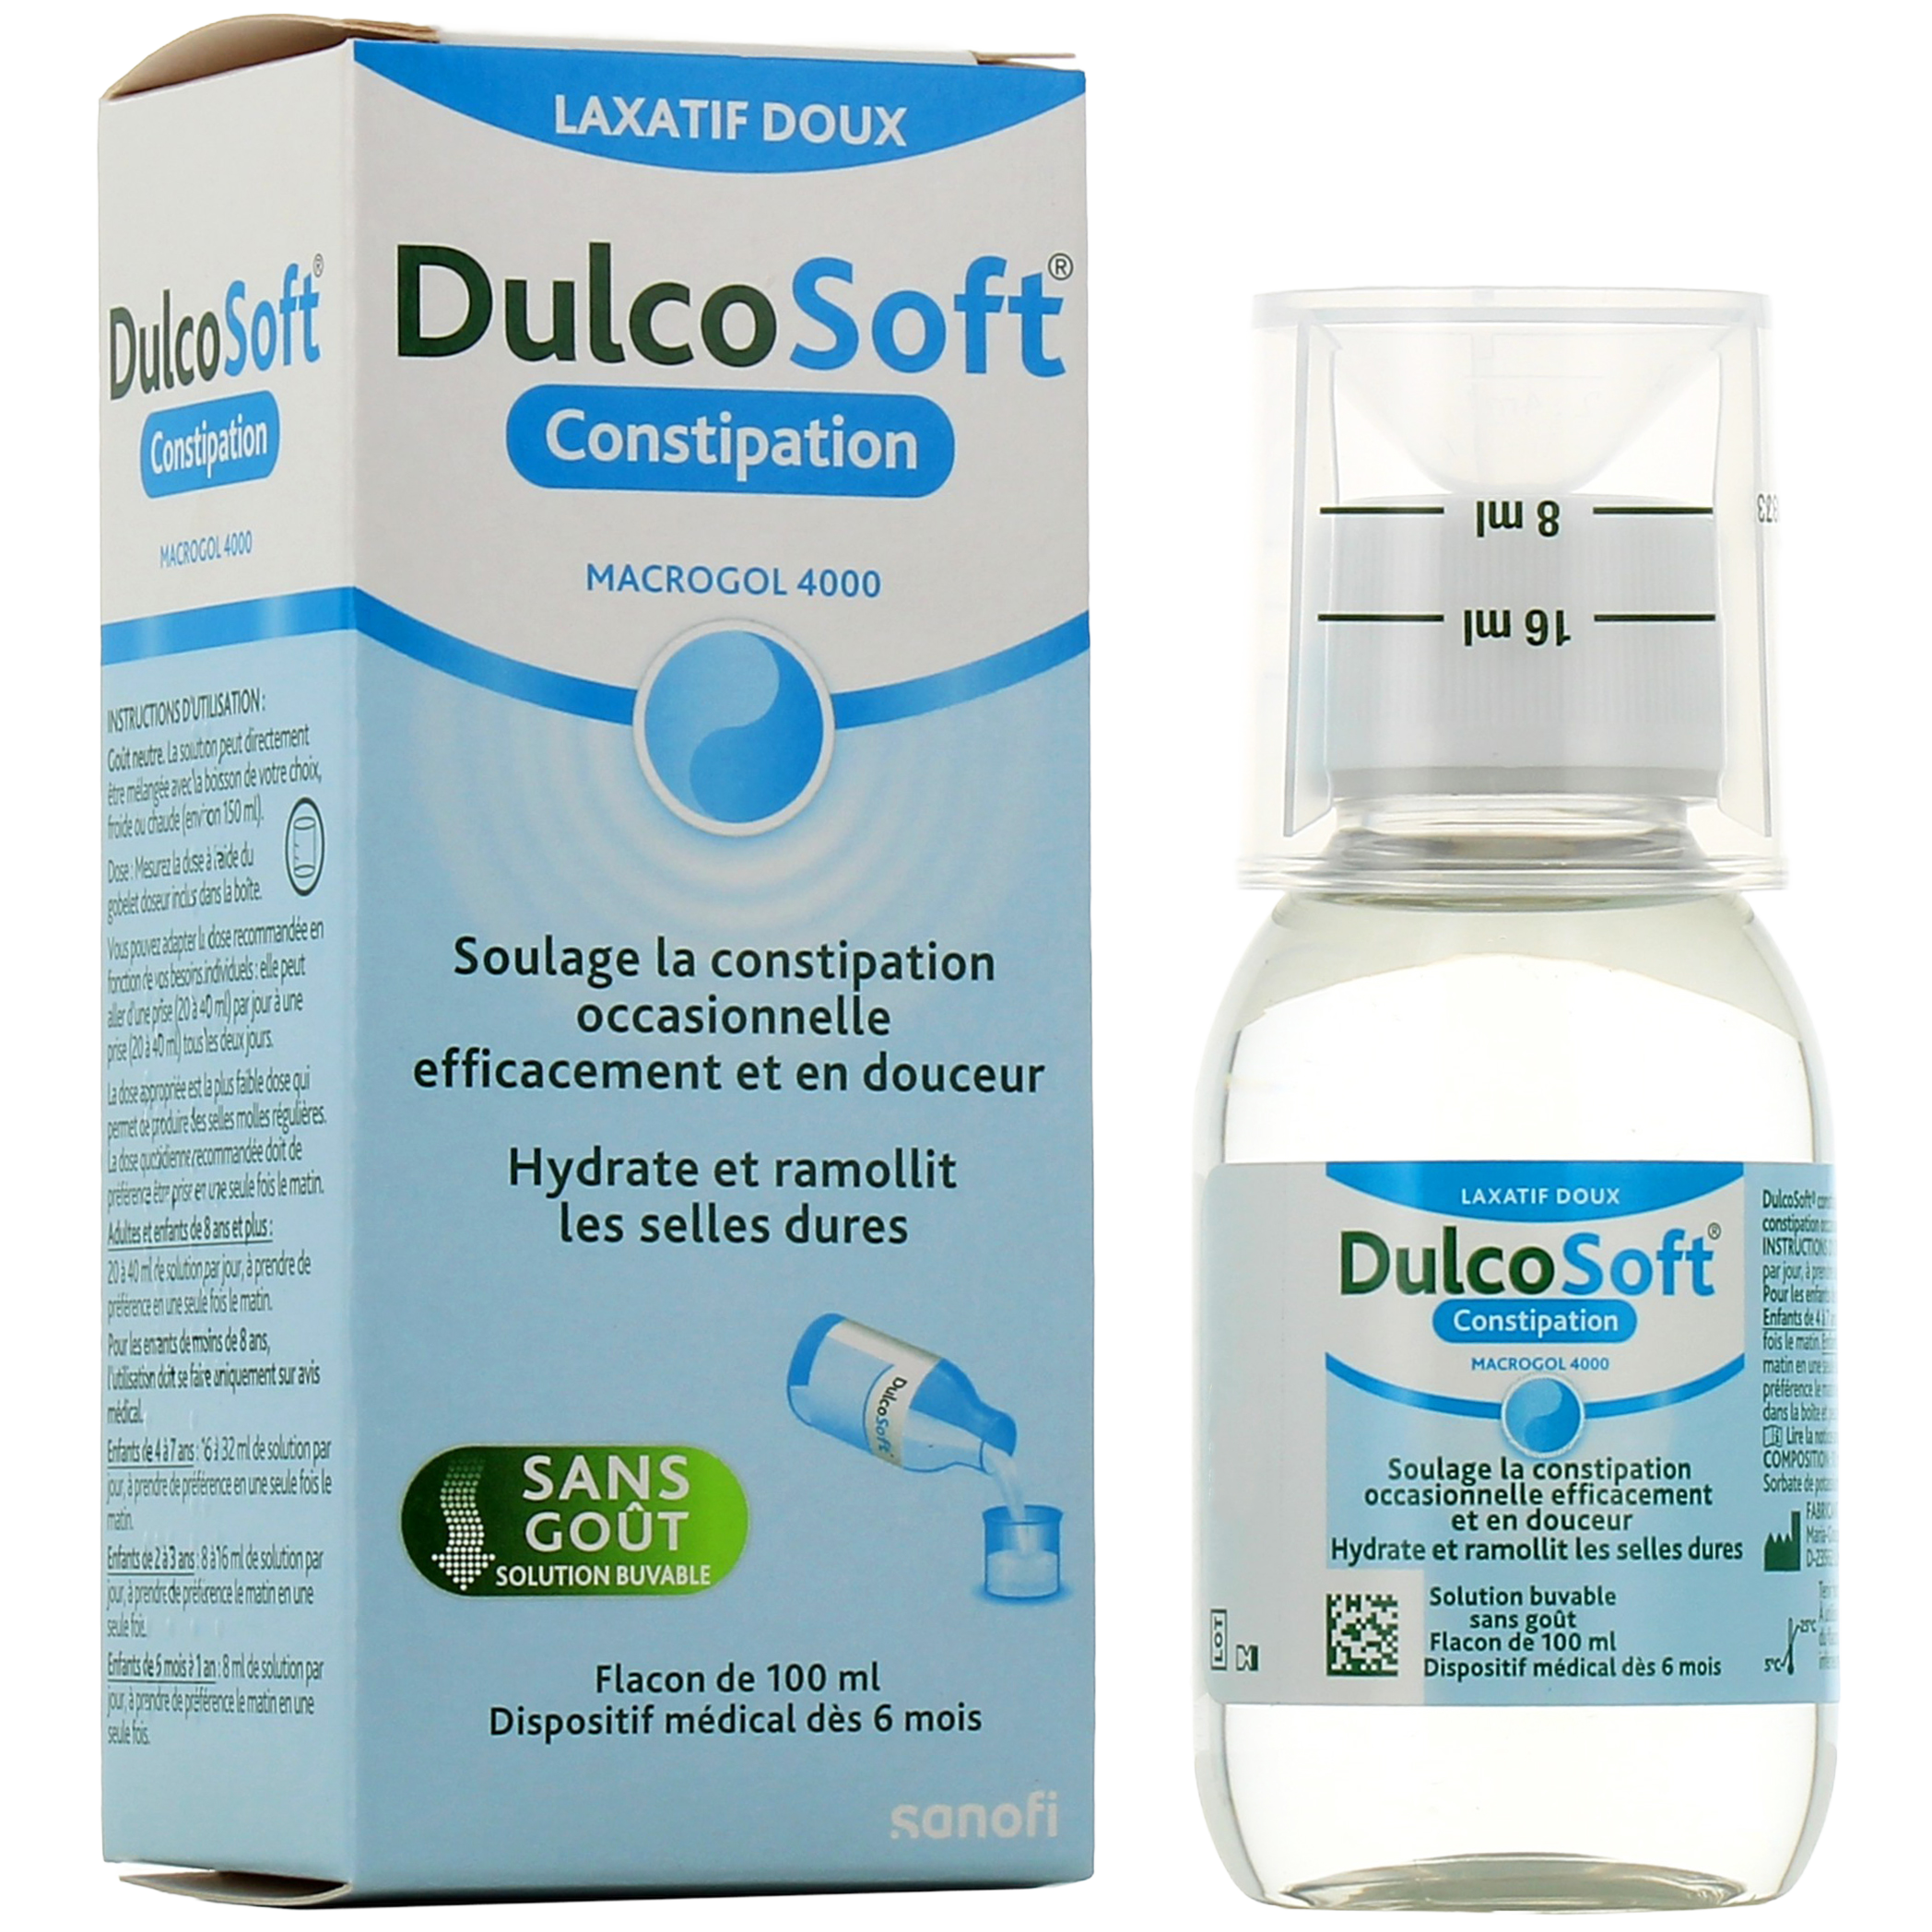 DULCOSOFT Macrogol 4000 Laxatif Doux 10 sachets Constipation